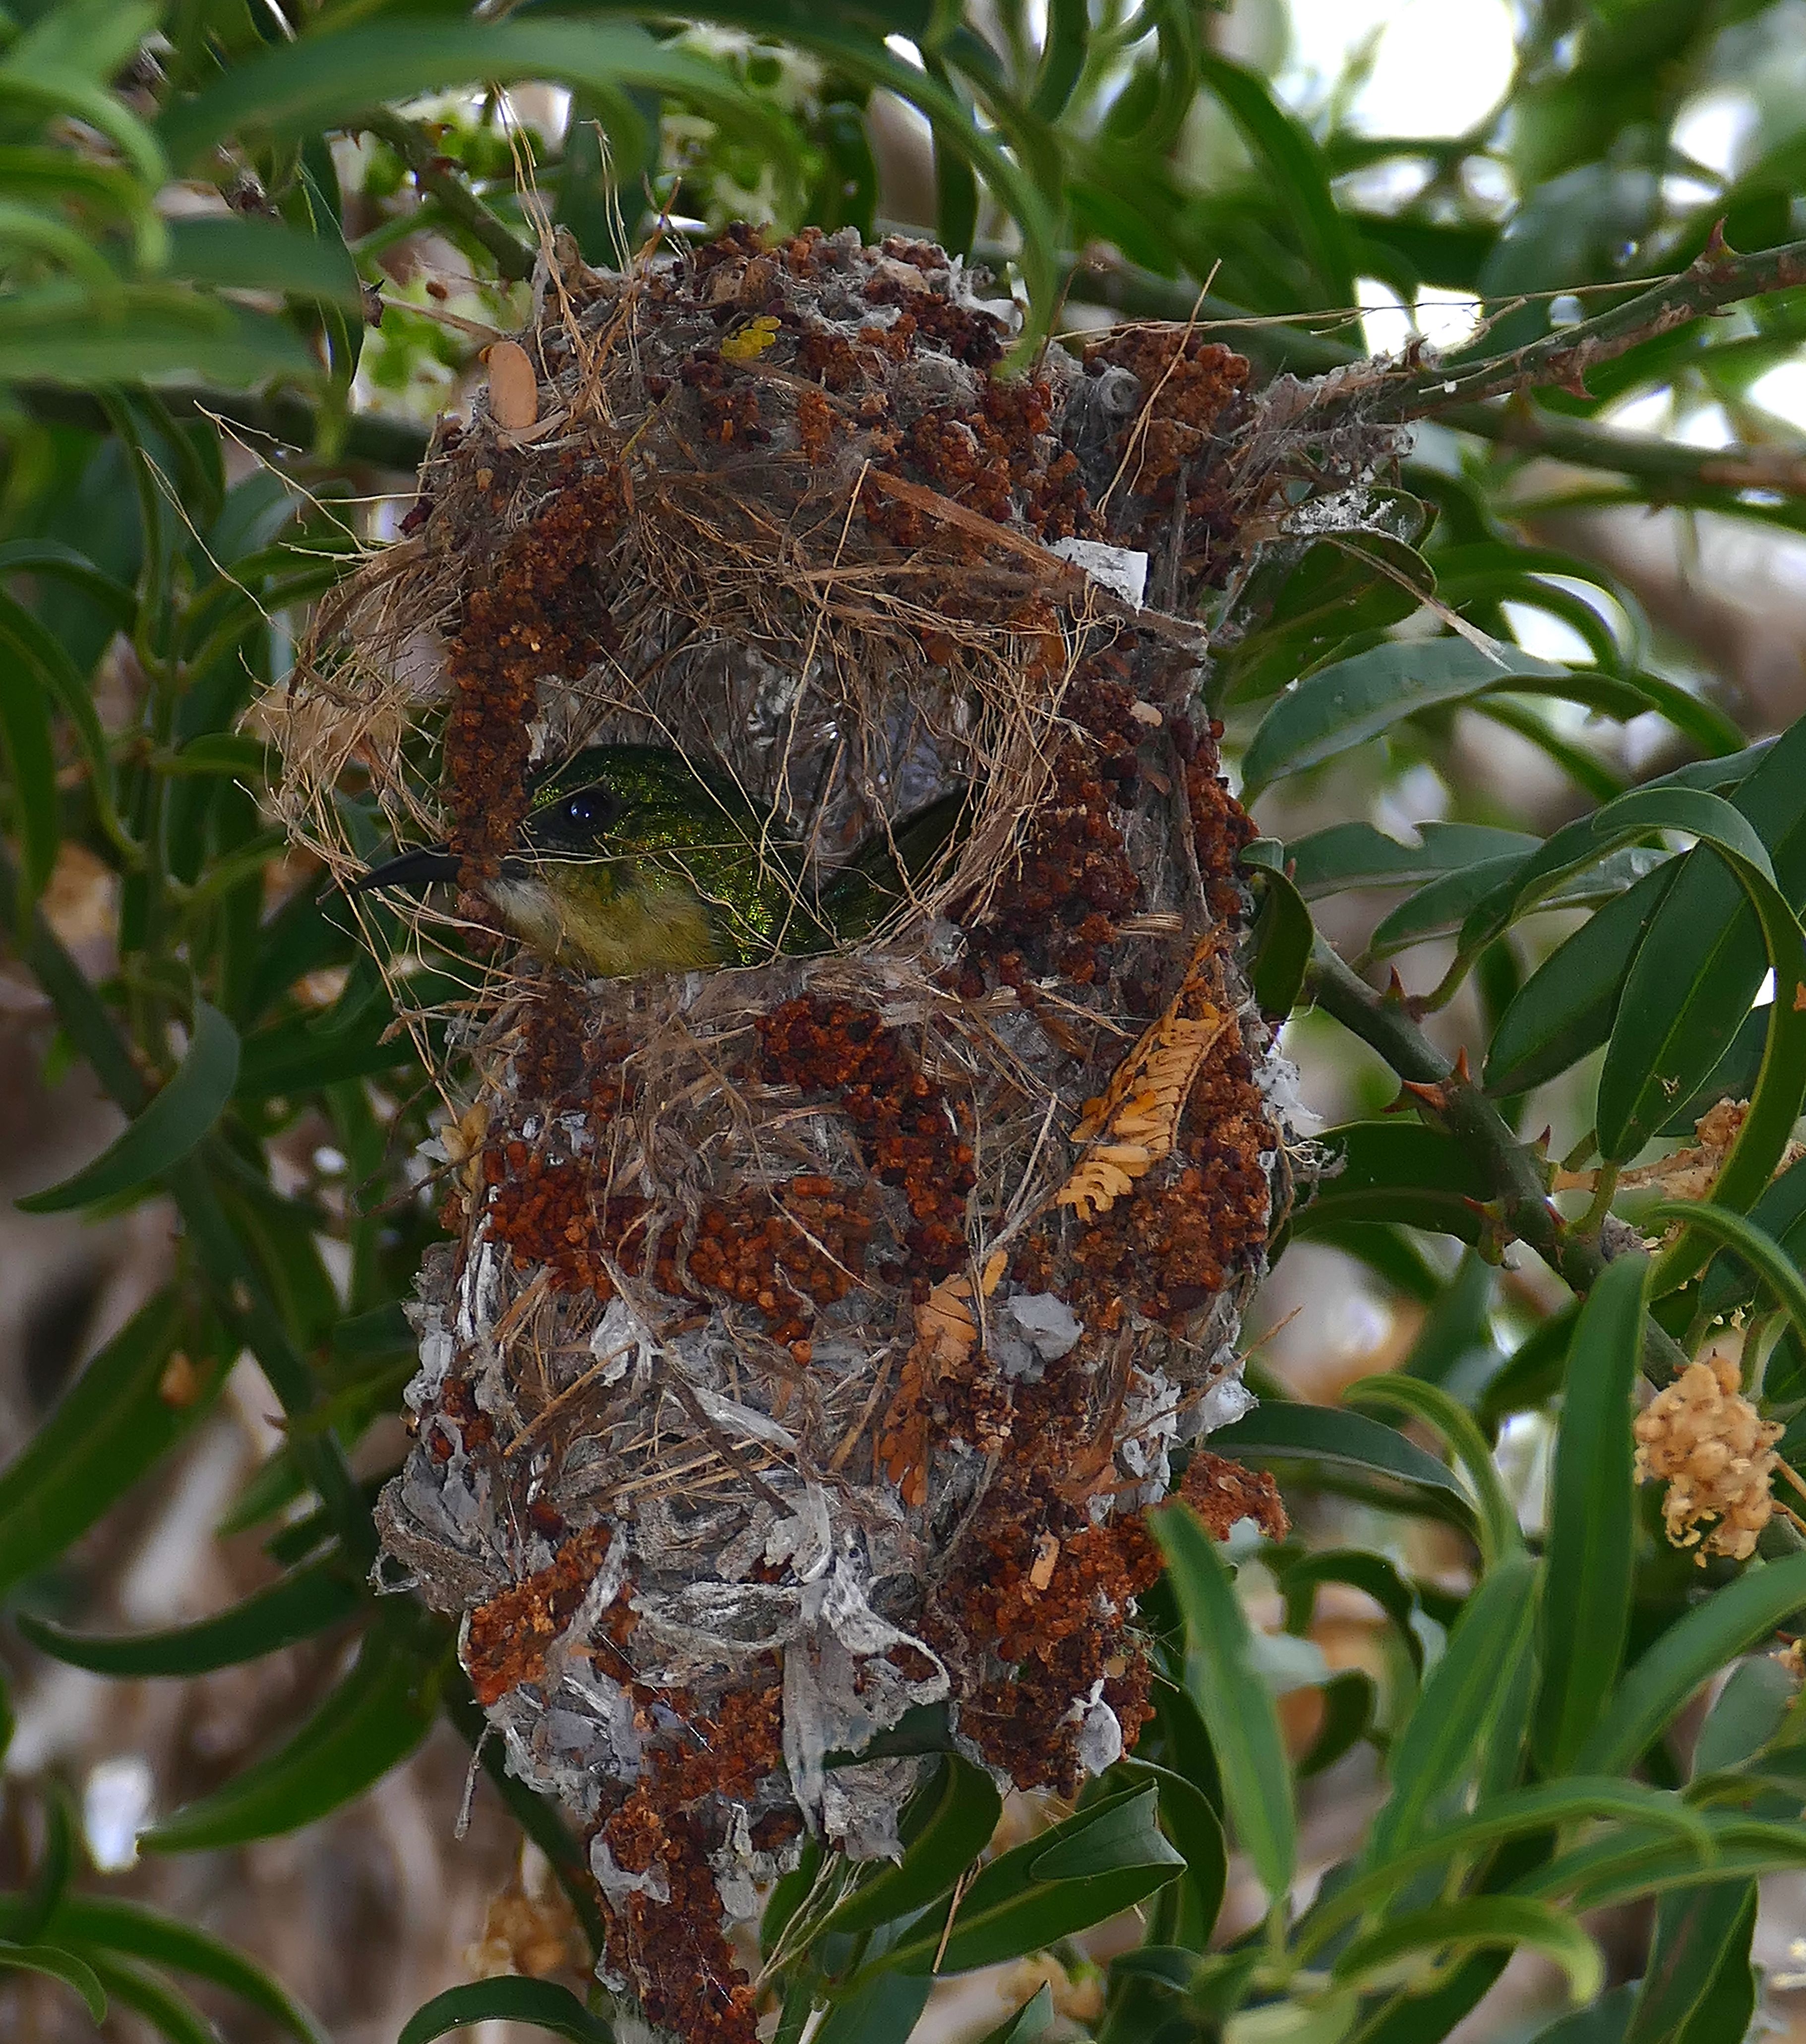 Bird inside a deep nest